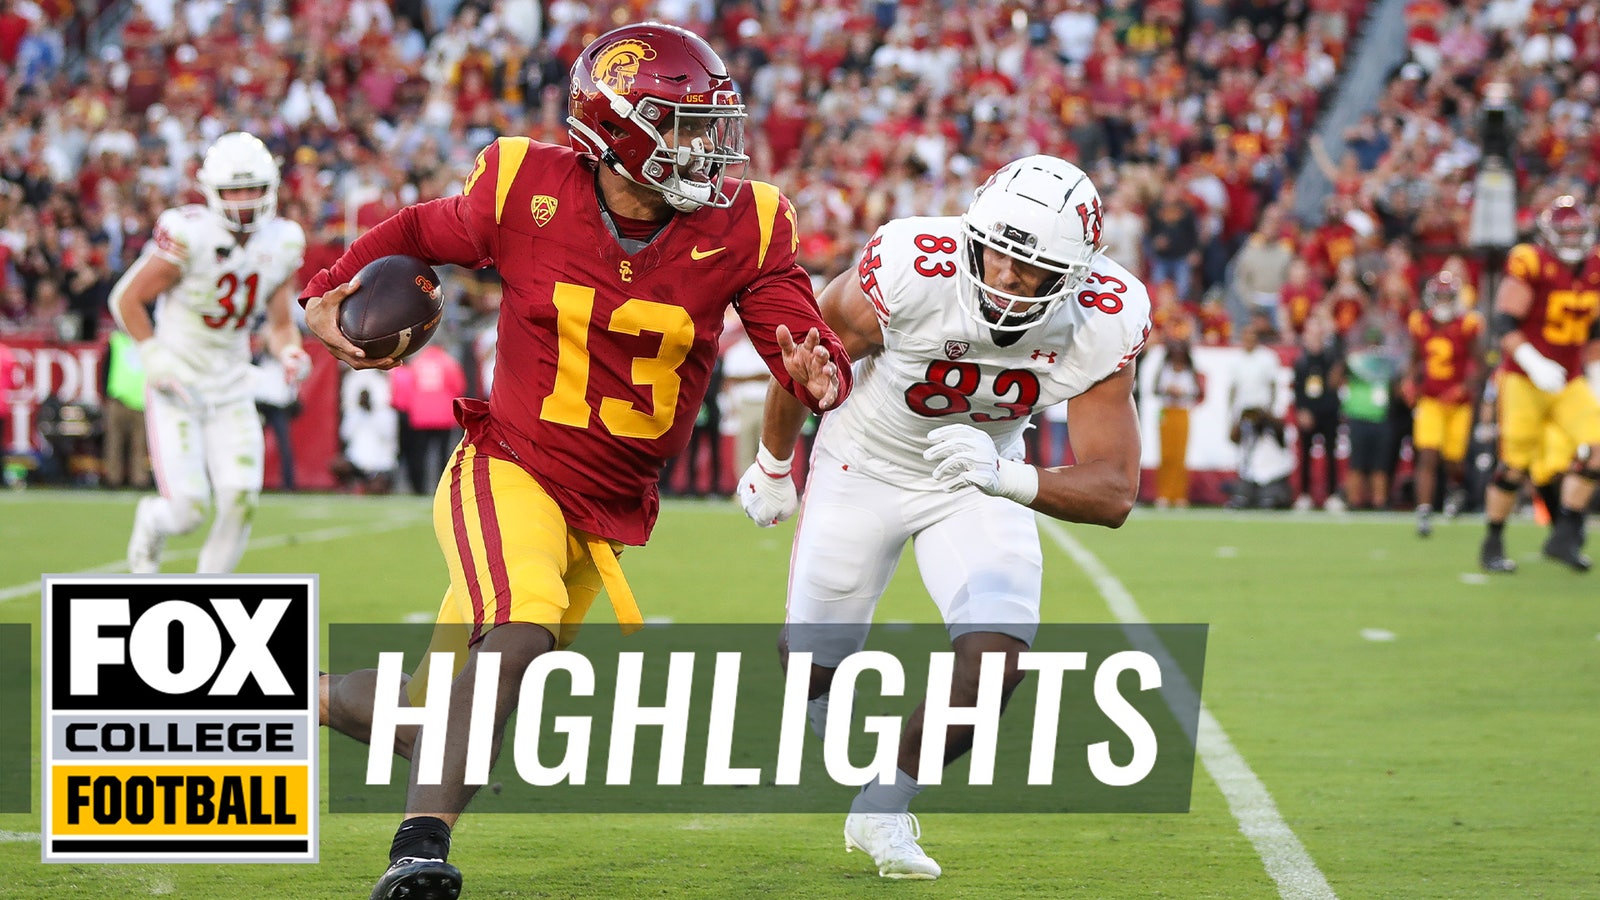 Highlights: Utah stuns USC on last-second field goal